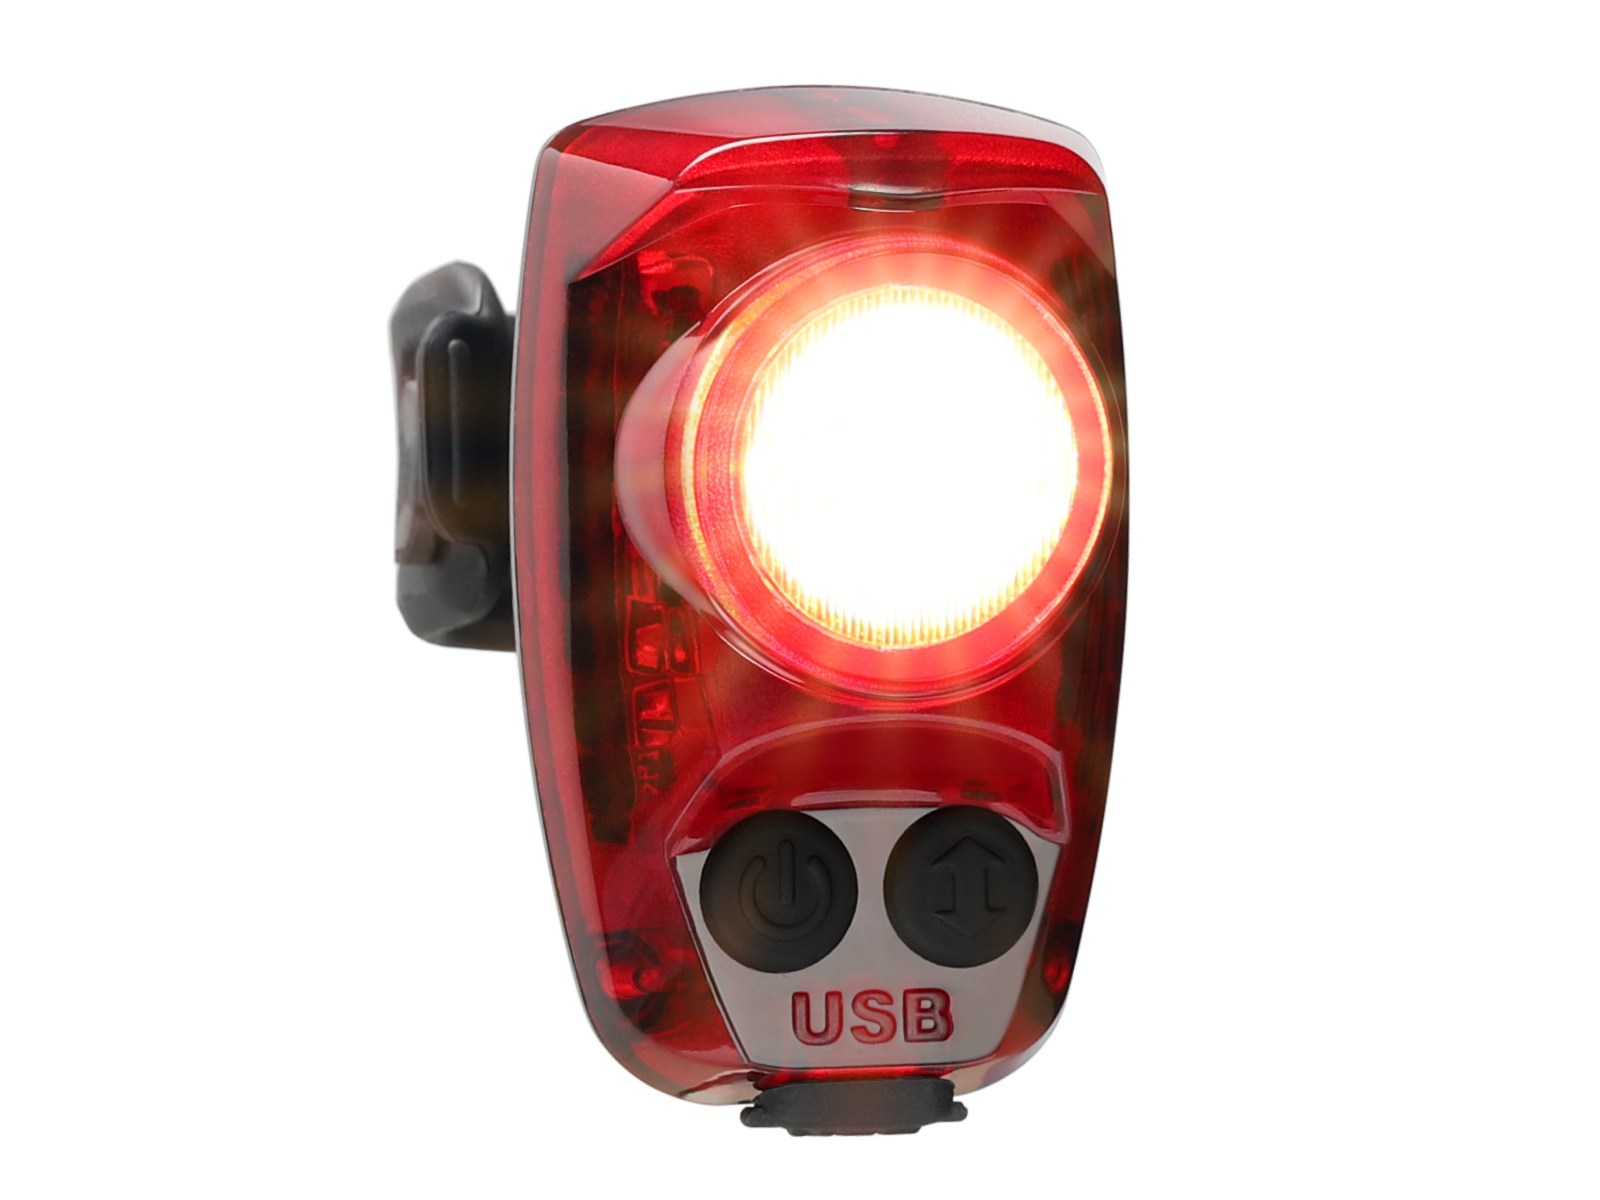 Задний фонарь для велосипеда Hotshot Pro 200 люмен Cygolite, красный задняя светодиодная лампа для велосипеда задний фонарь для велосипеда